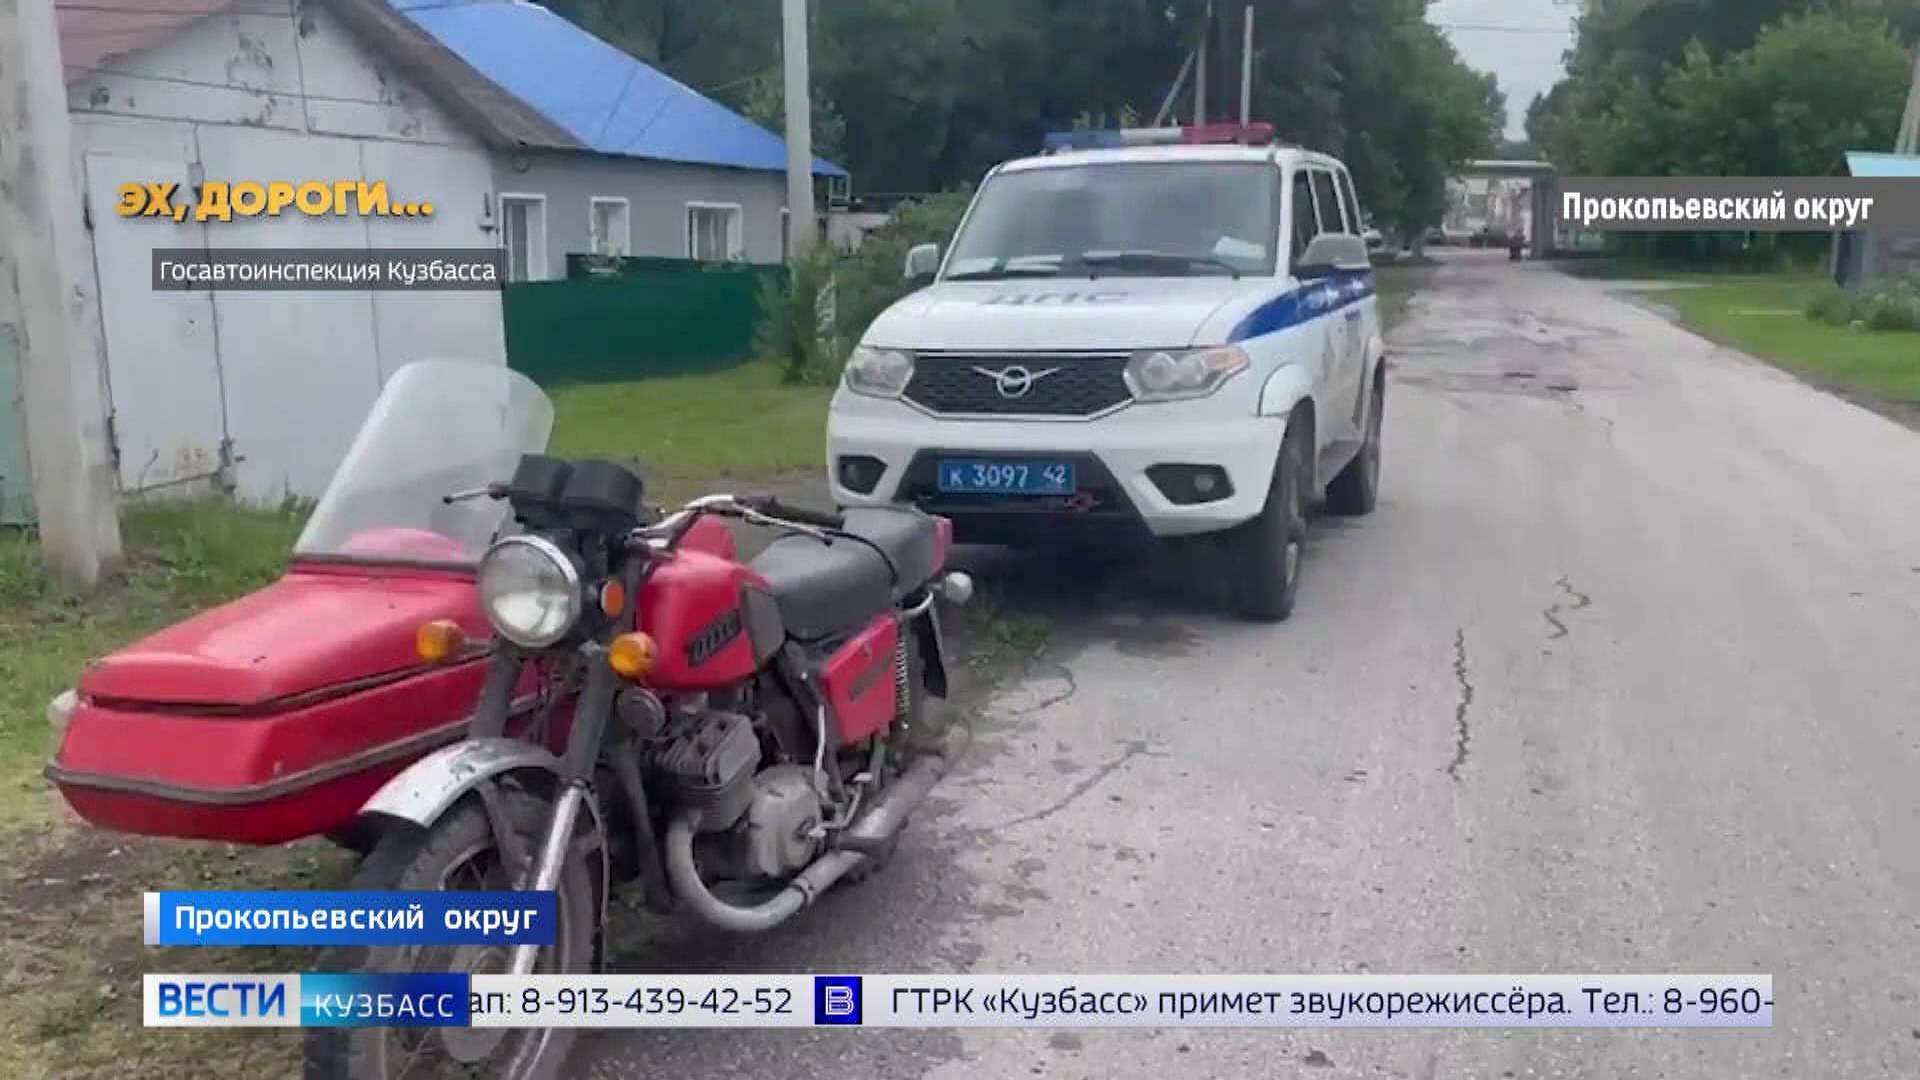 Пьяный мотоциклист и ДТП с беременной женщиной: сводка происшествий по Кузбассу